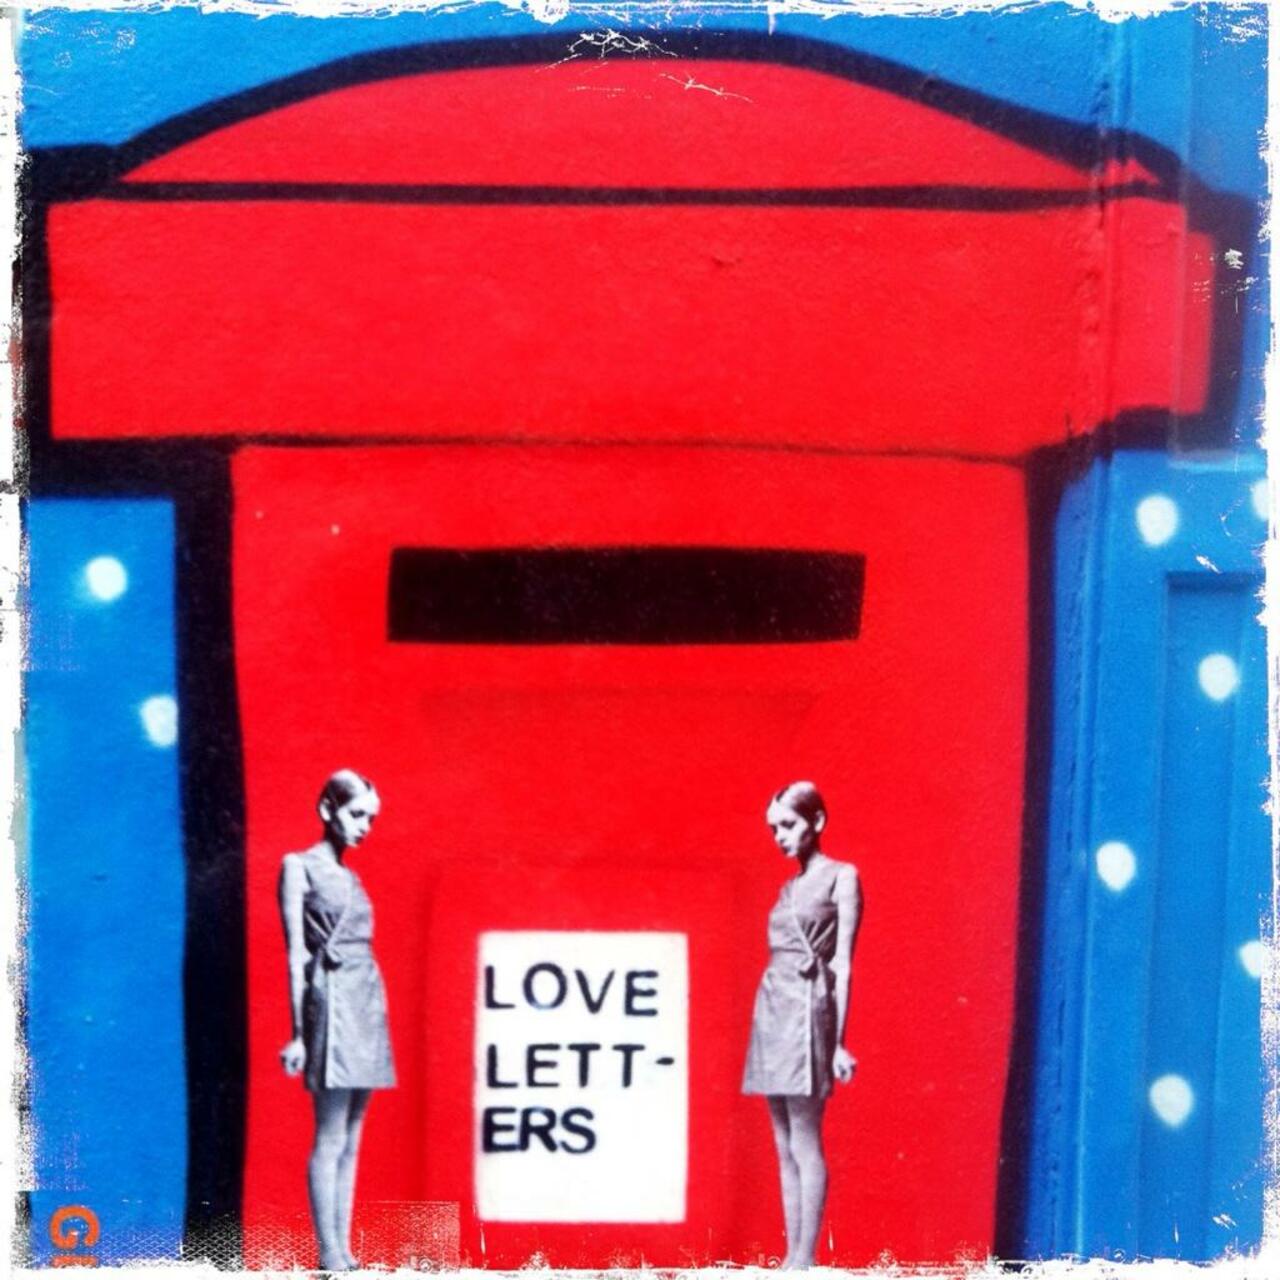 #streetart Love Letters... RT @BrickLaneArt by @D7606ART on White Church Lane #art #graffiti http://t.co/m7uO5KxmIz"